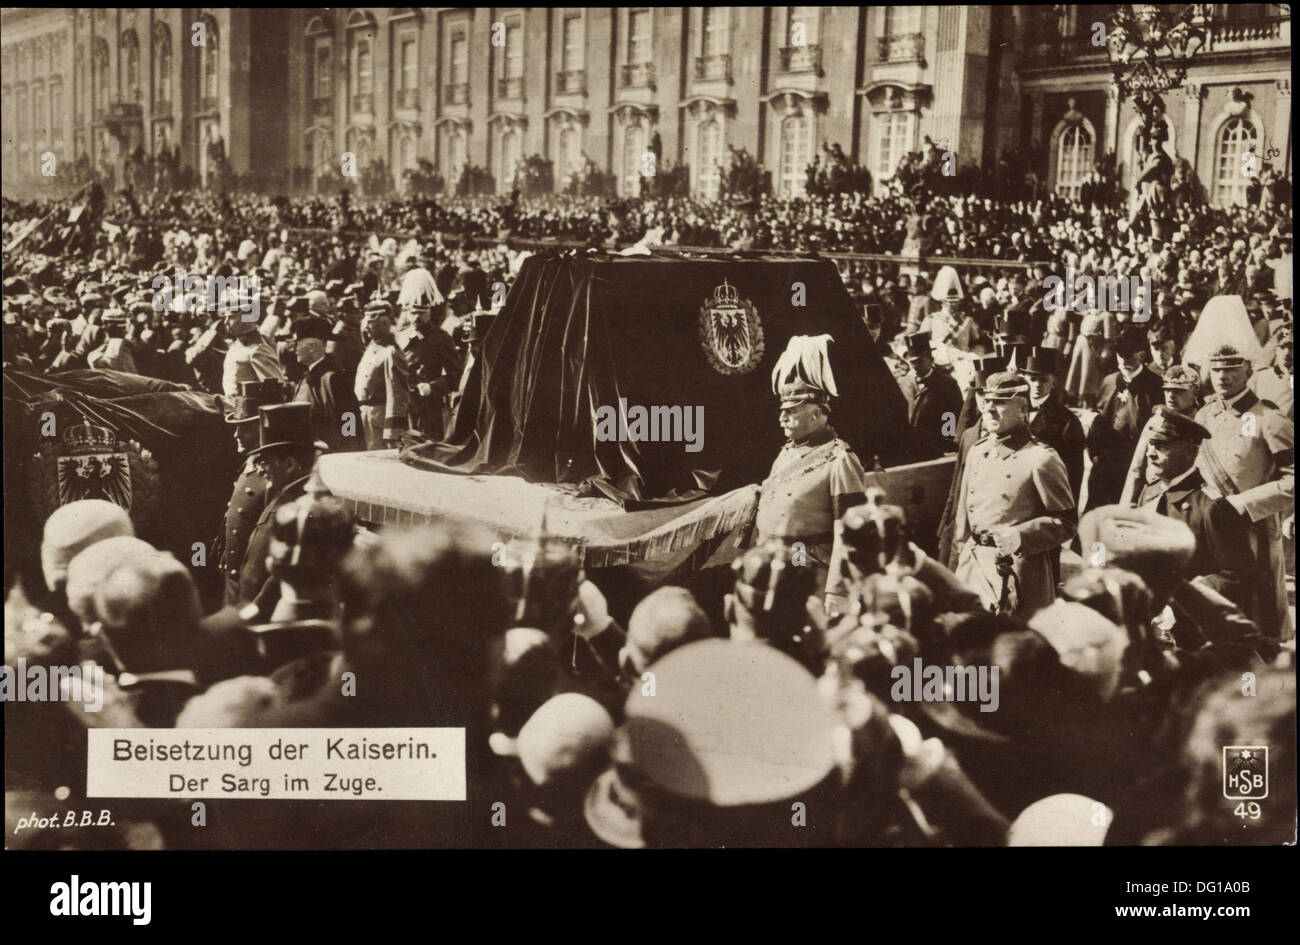 Ak Beisetzung der Kaiserin Auguste Viktoria, der Sarg im Zuge; Foto Stock